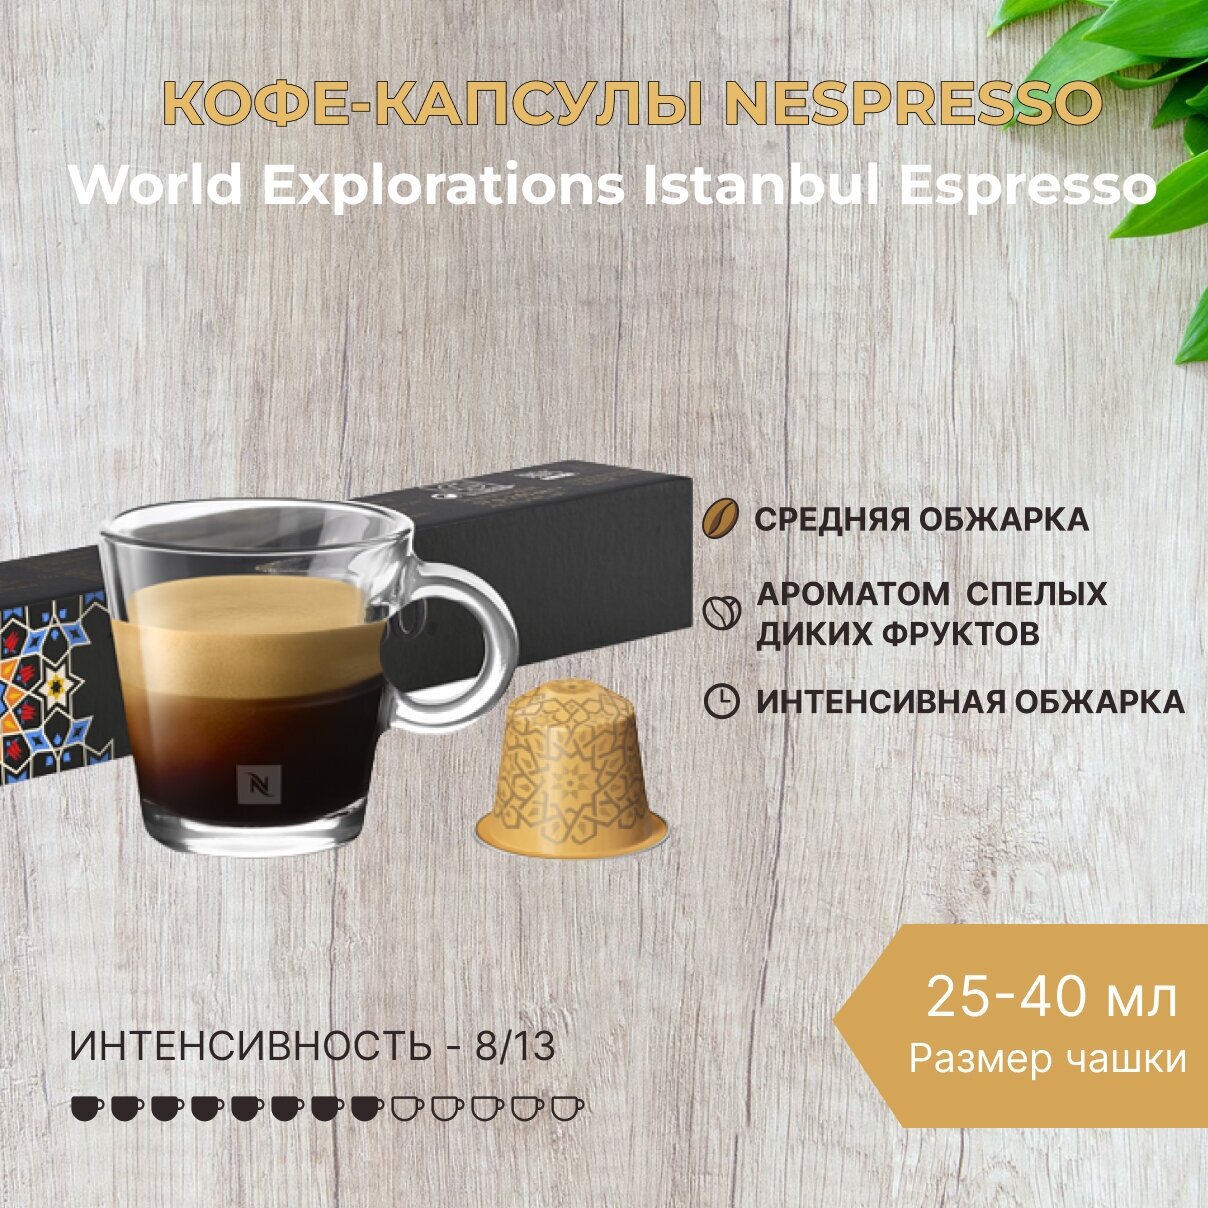 Кофе в капсулах Nespresso World Explorations Istanbul Espresso 25-40 мл. 8/13 одна упаковка капсул Неспрессо Original (10 шт)